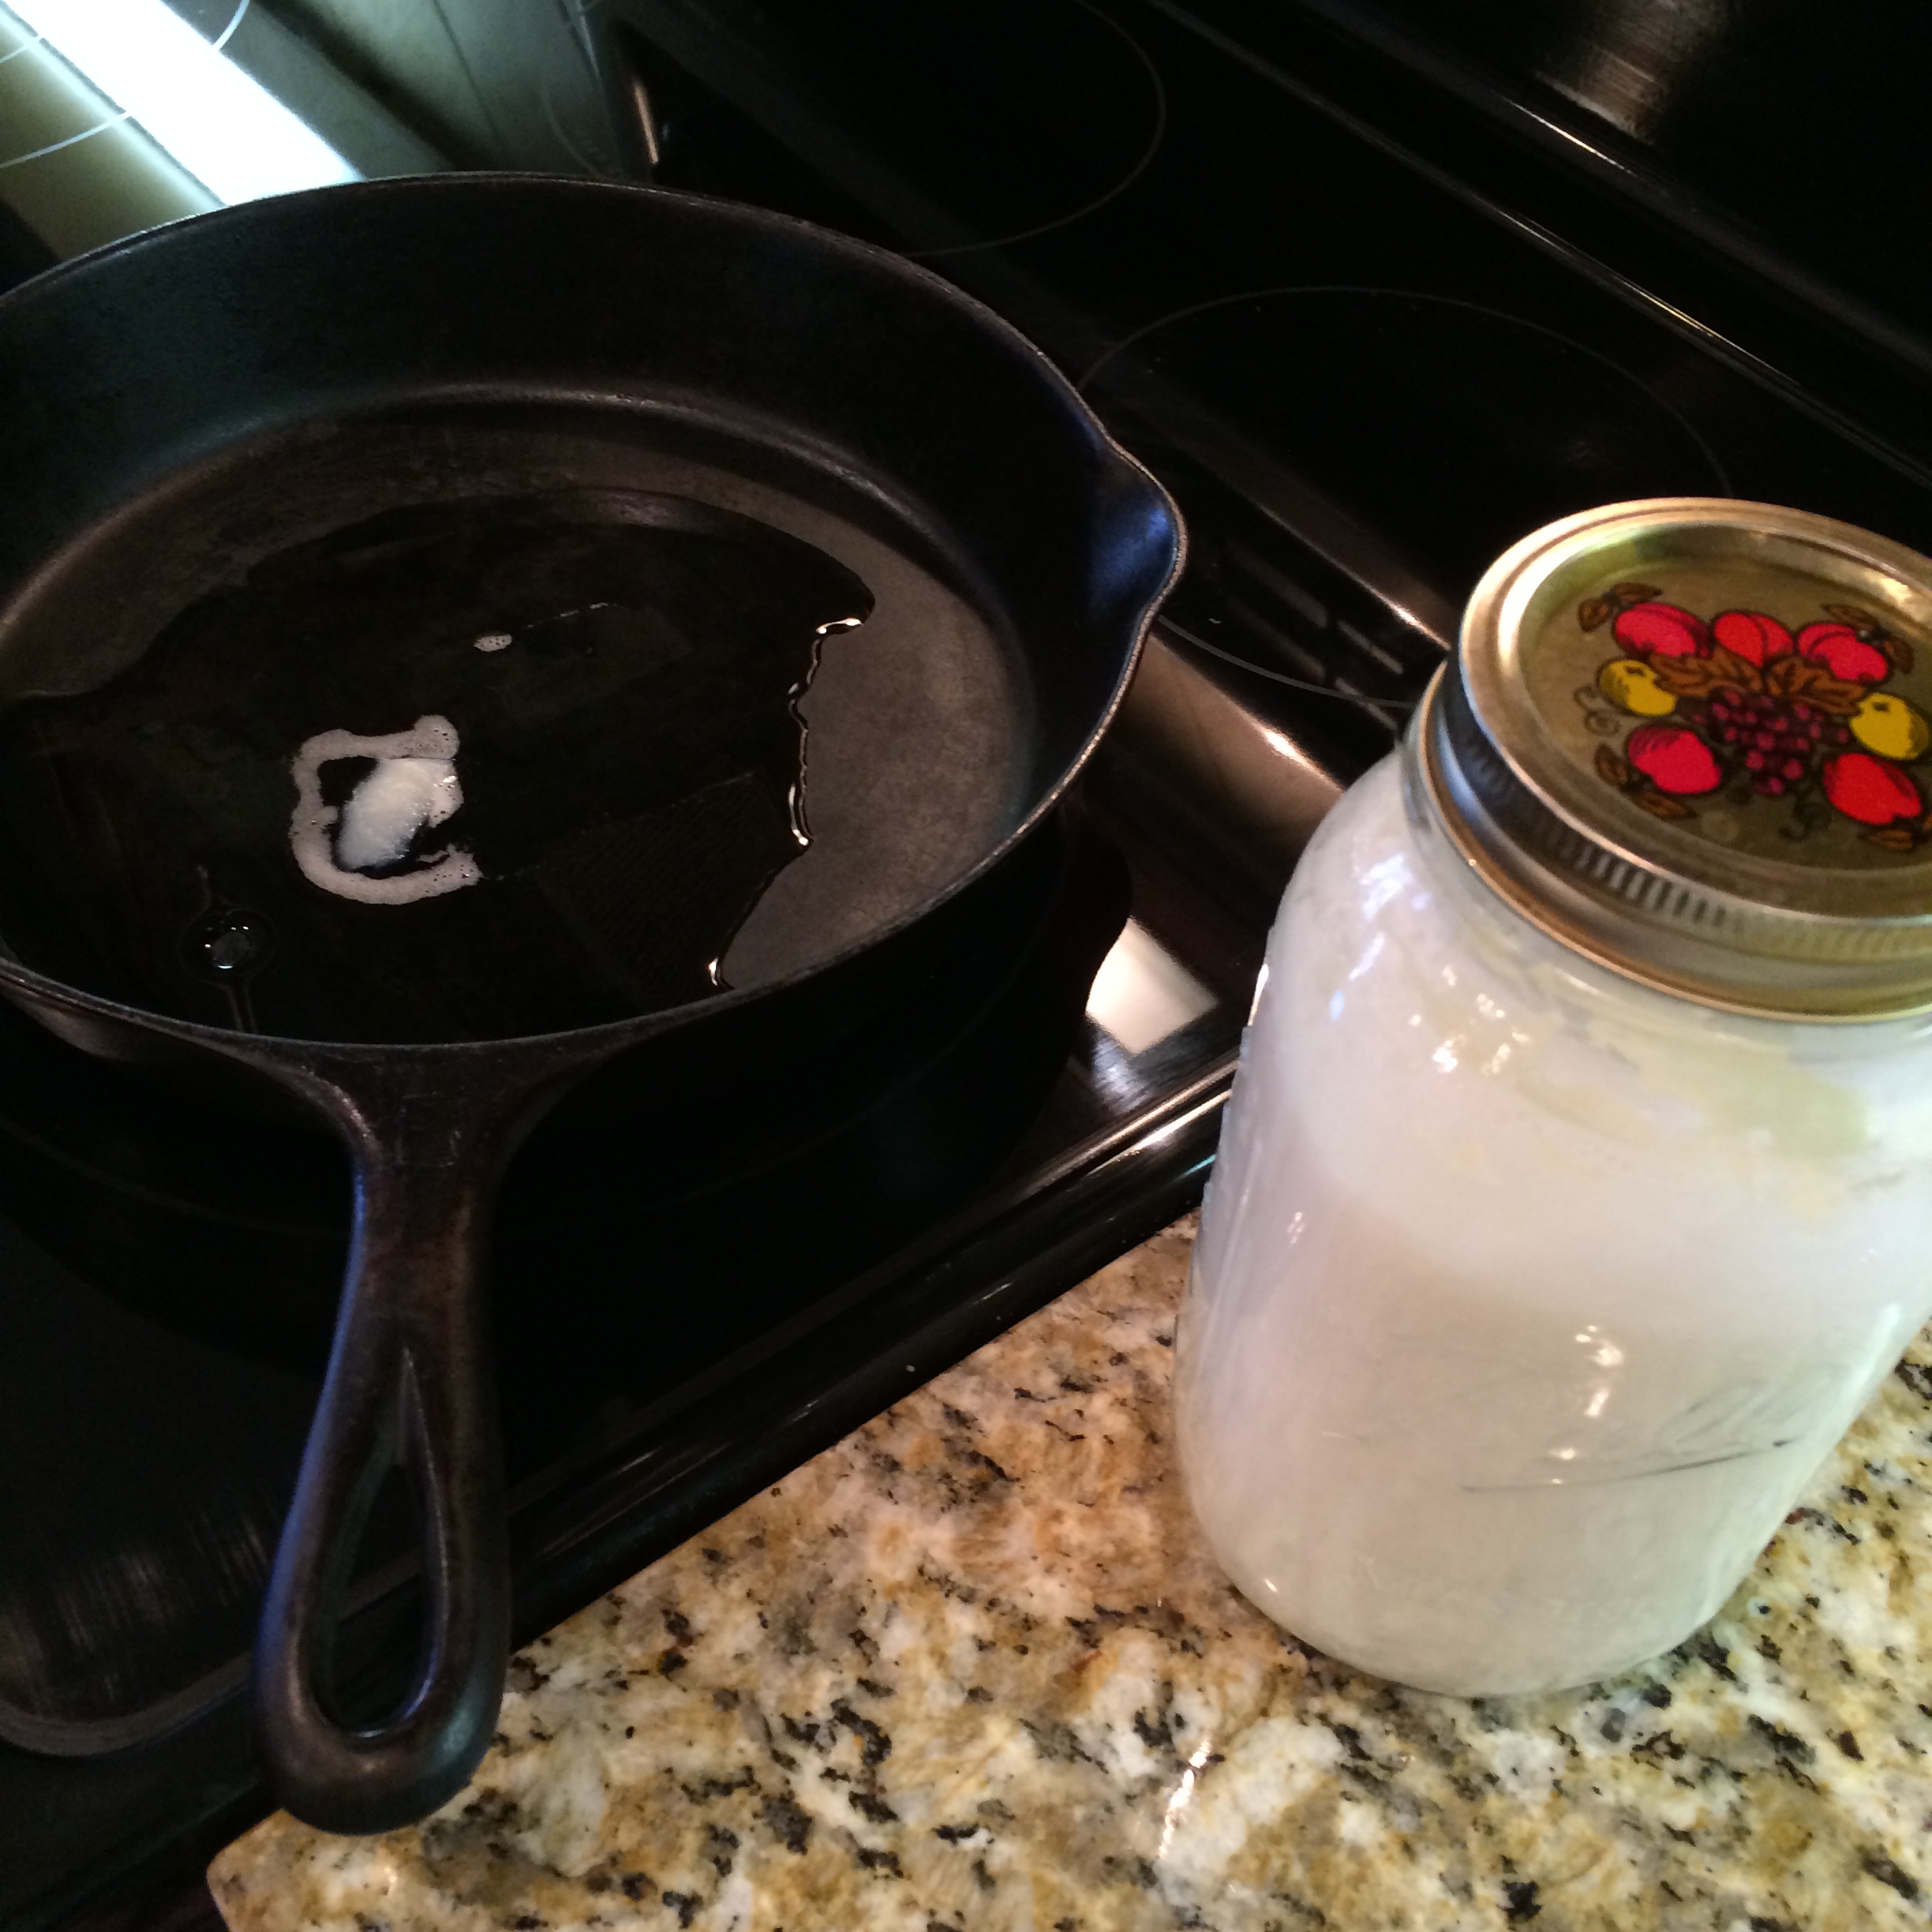 SCD Yogurt in Quart Jar